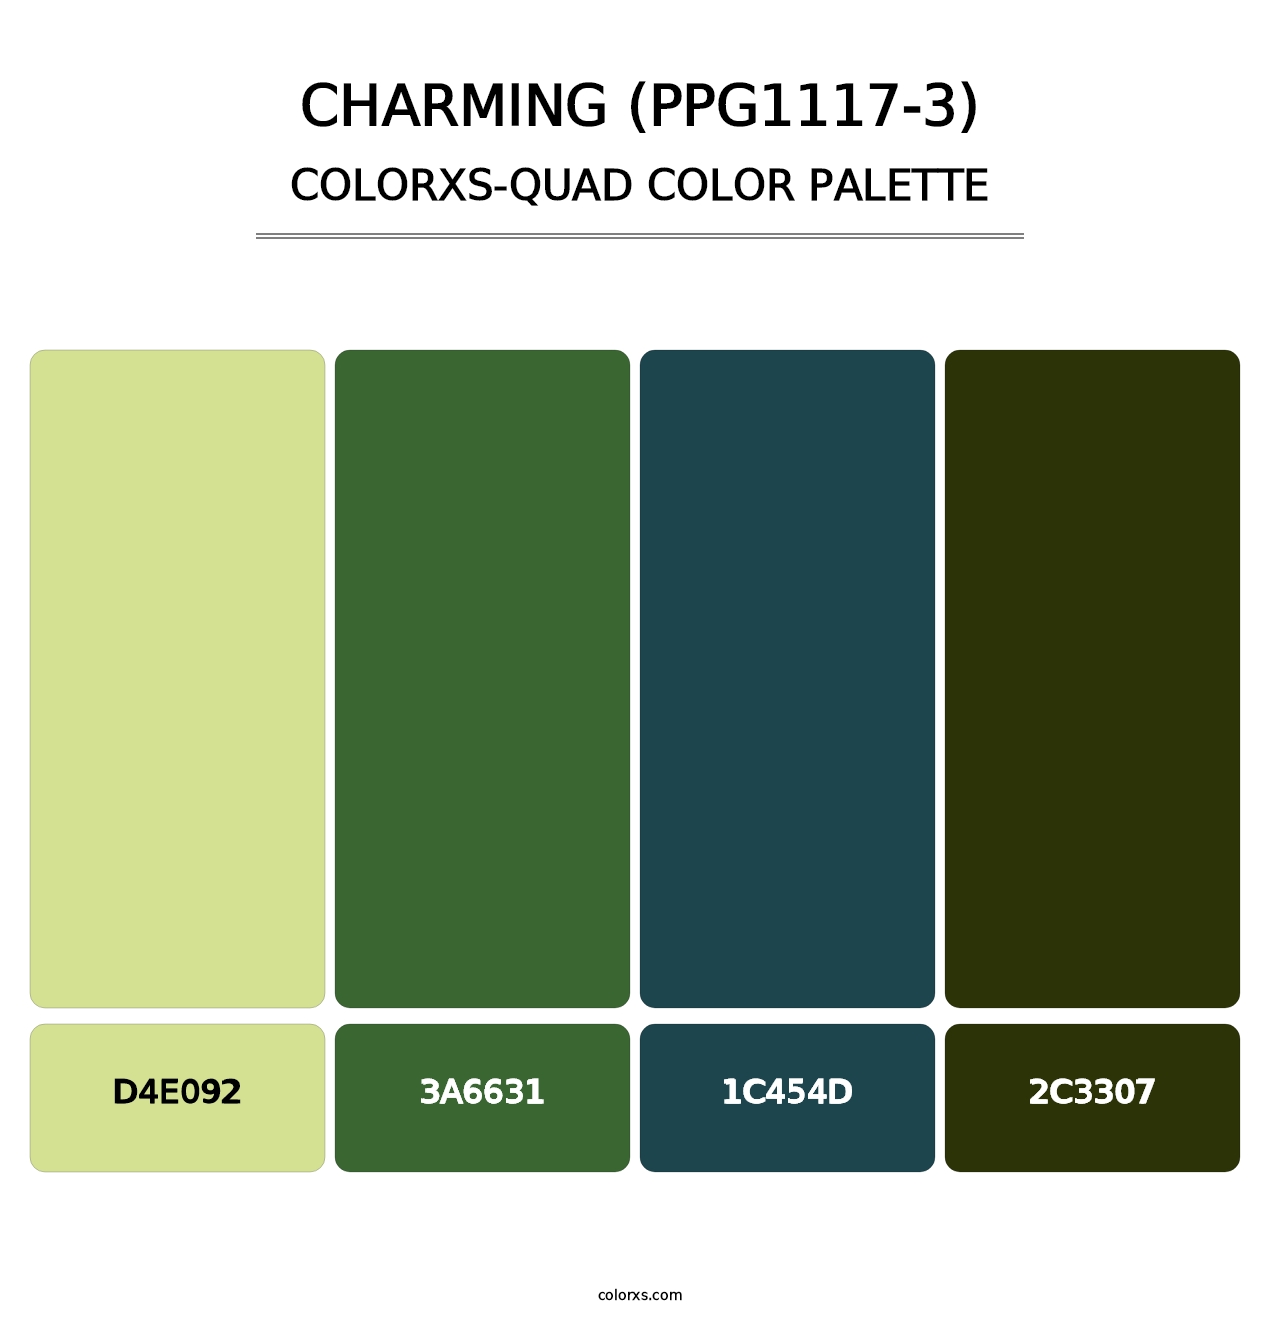 Charming (PPG1117-3) - Colorxs Quad Palette